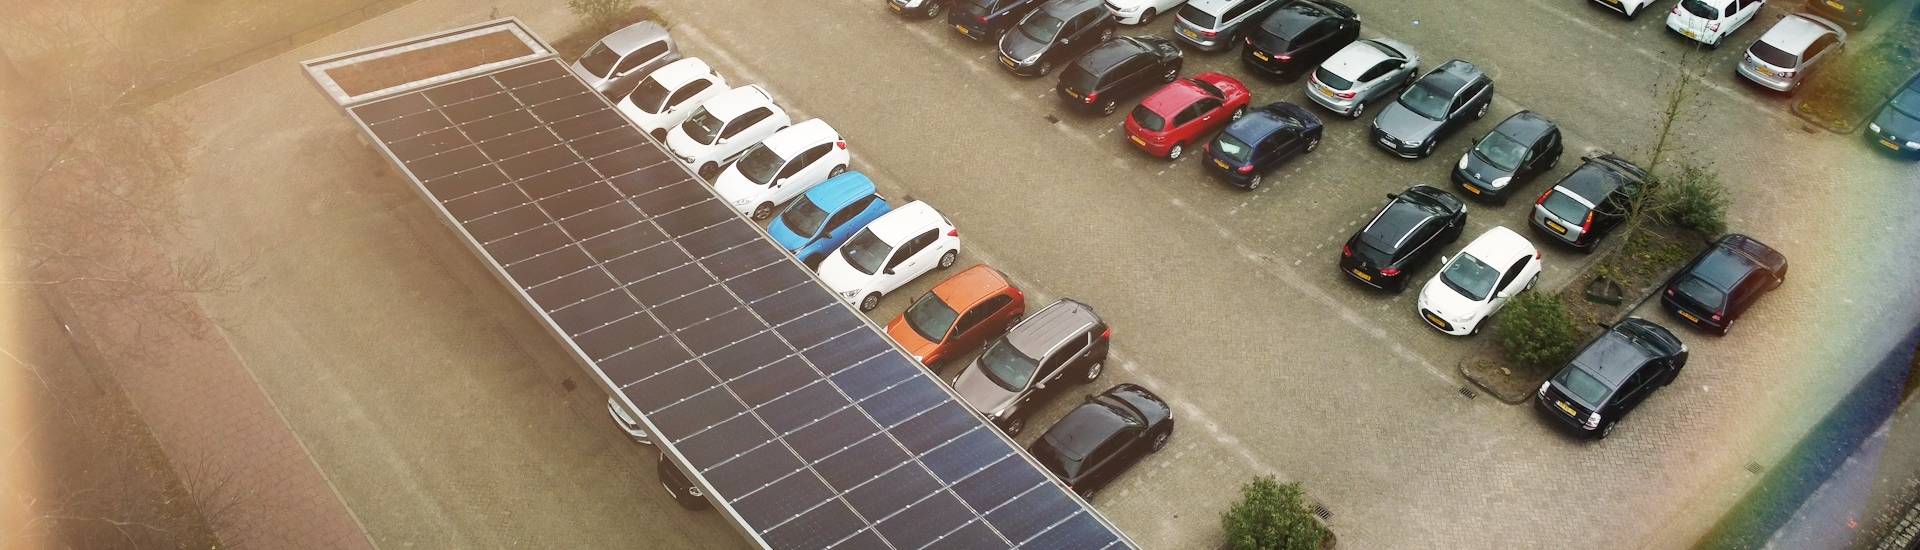 Parkeerplekken zijn overdekt met zonnepanelen, een batterij staat naast de parkeerplaats om opgewekt